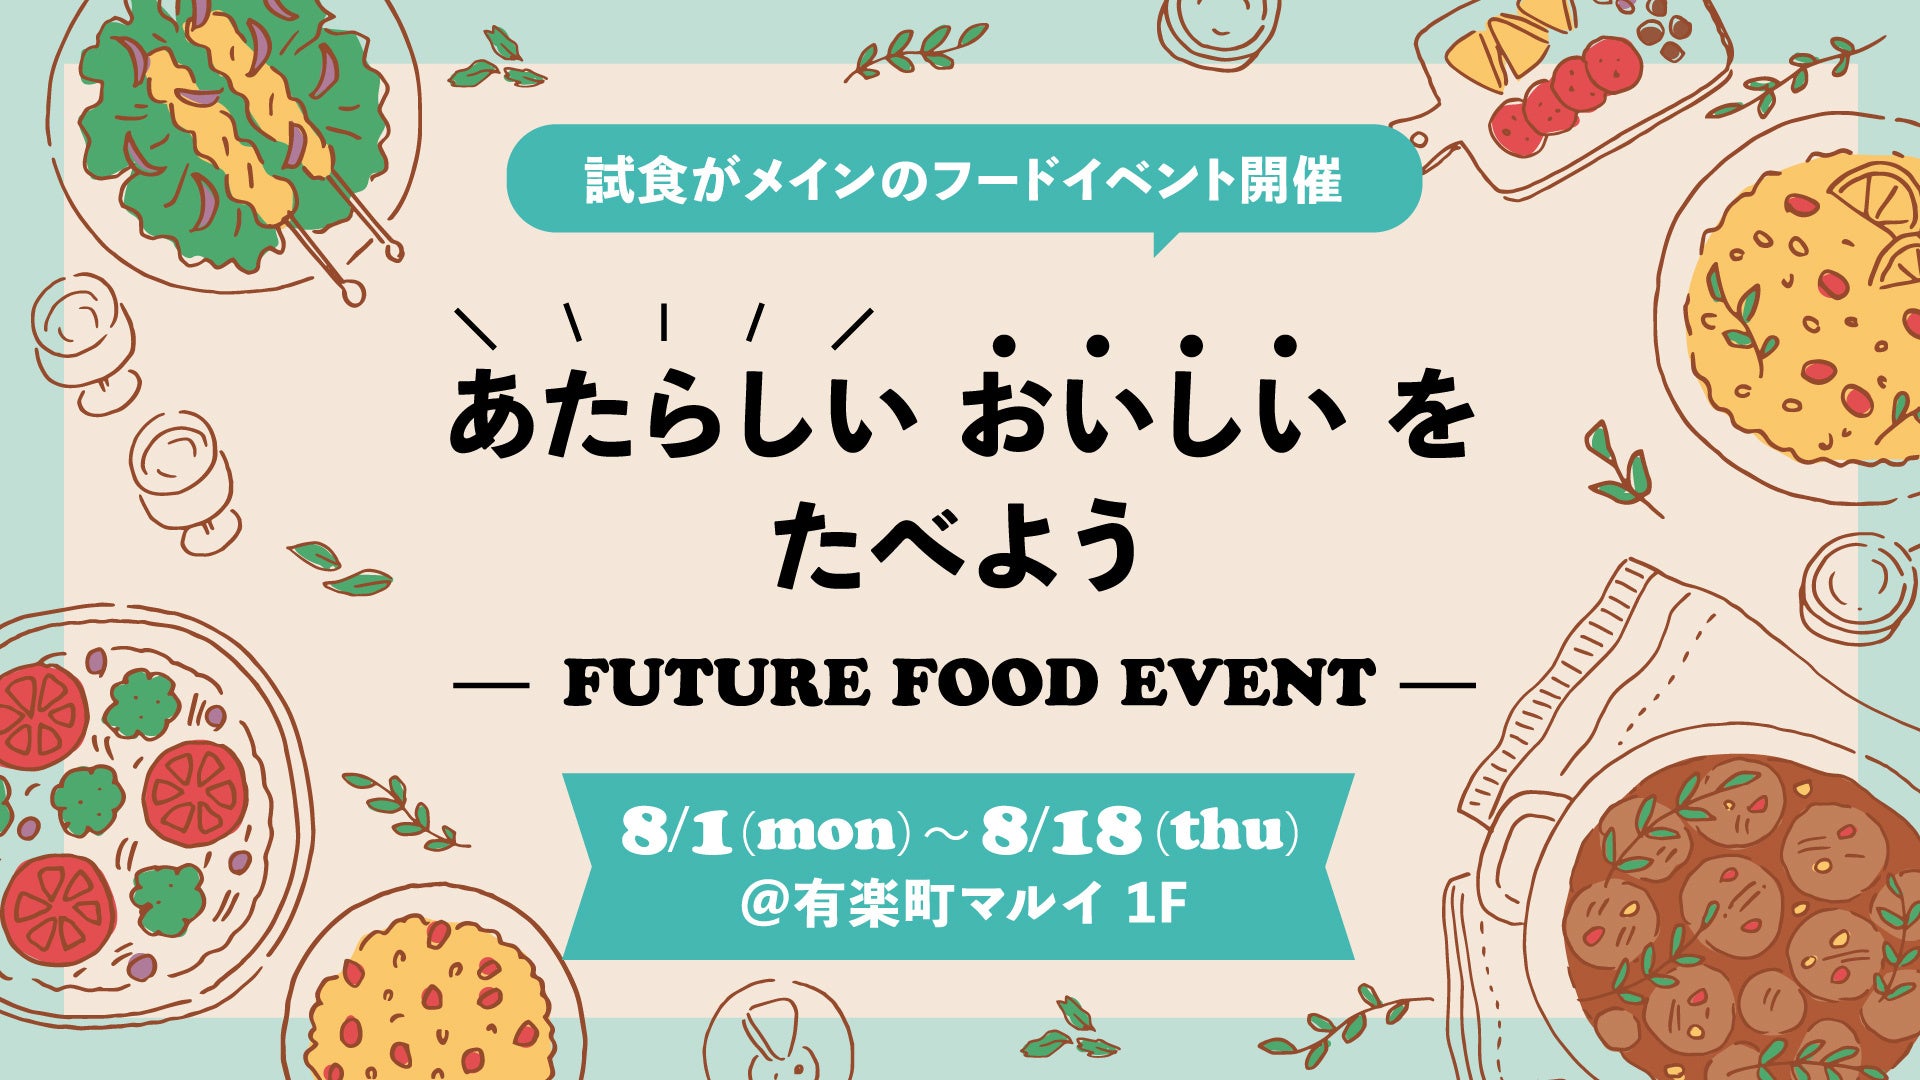 有楽町マルイでフードテックのイベント「ＦＵＴＵＲＥ ＦＯＯＤ ＥＶＥＮＴ」を開催！試食メインの体験イベントを通じて新しい”おいしい”をご提供します！！